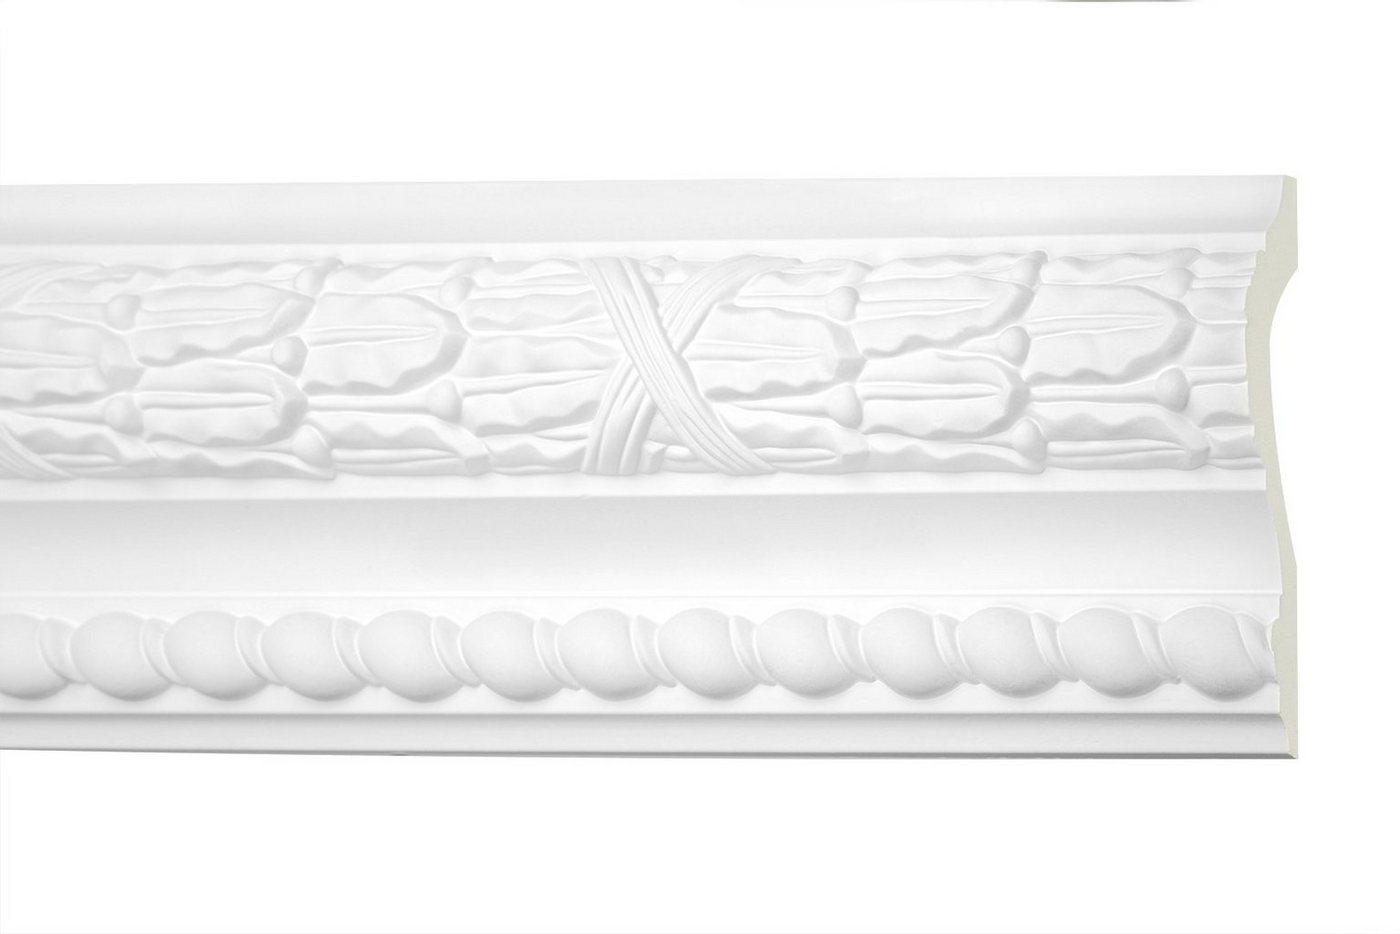 Hexim Perfect Stuckleiste AC 267, Flachprofile aus PU Serie 2 - Stuckprofil gemustert, weißes Zierprofil, hart & stoßfest - Wandleiste vorgrundiert von Hexim Perfect